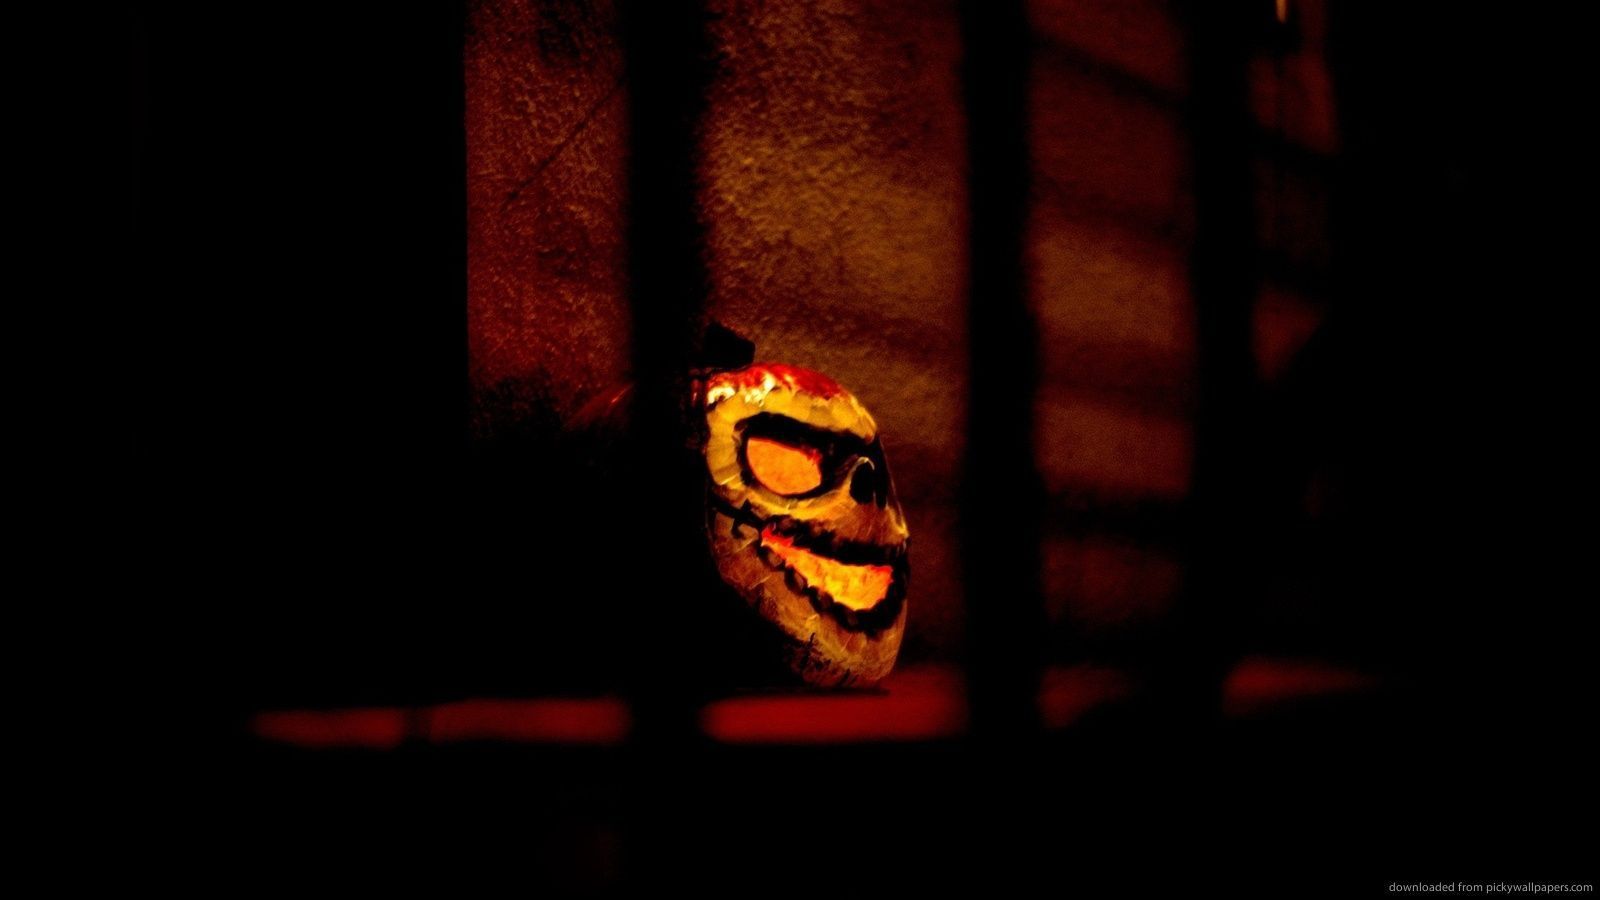 Download 1600x900 Halloween Insane Pumpkin Mask Wallpaper